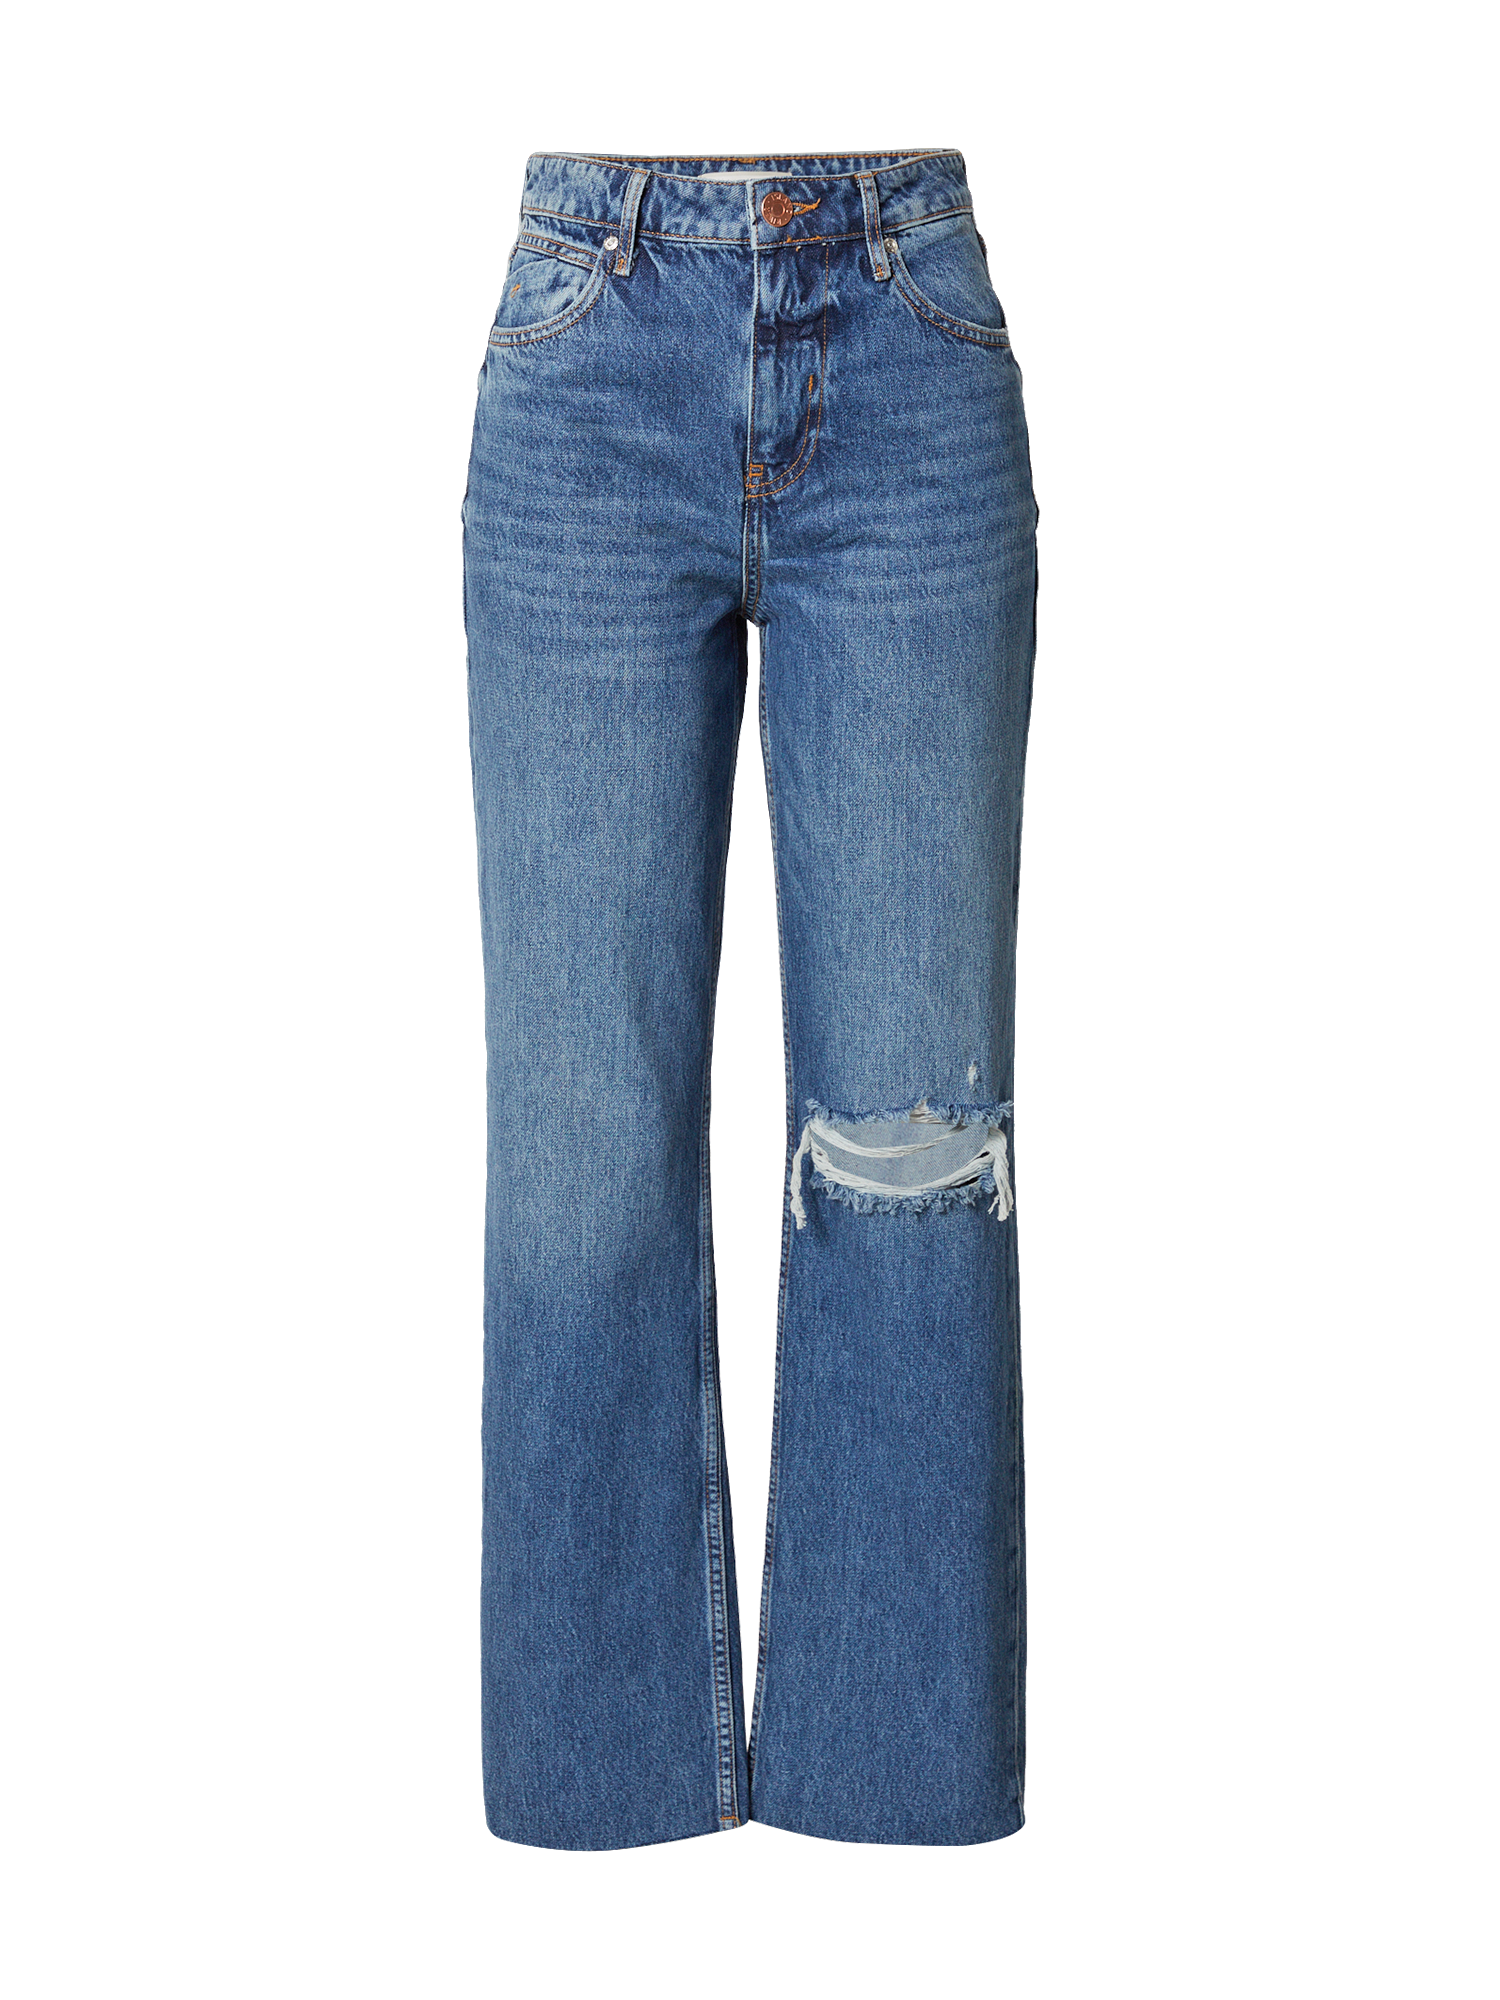 nuRr1 Abbigliamento River Island Jeans 90S in Blu 